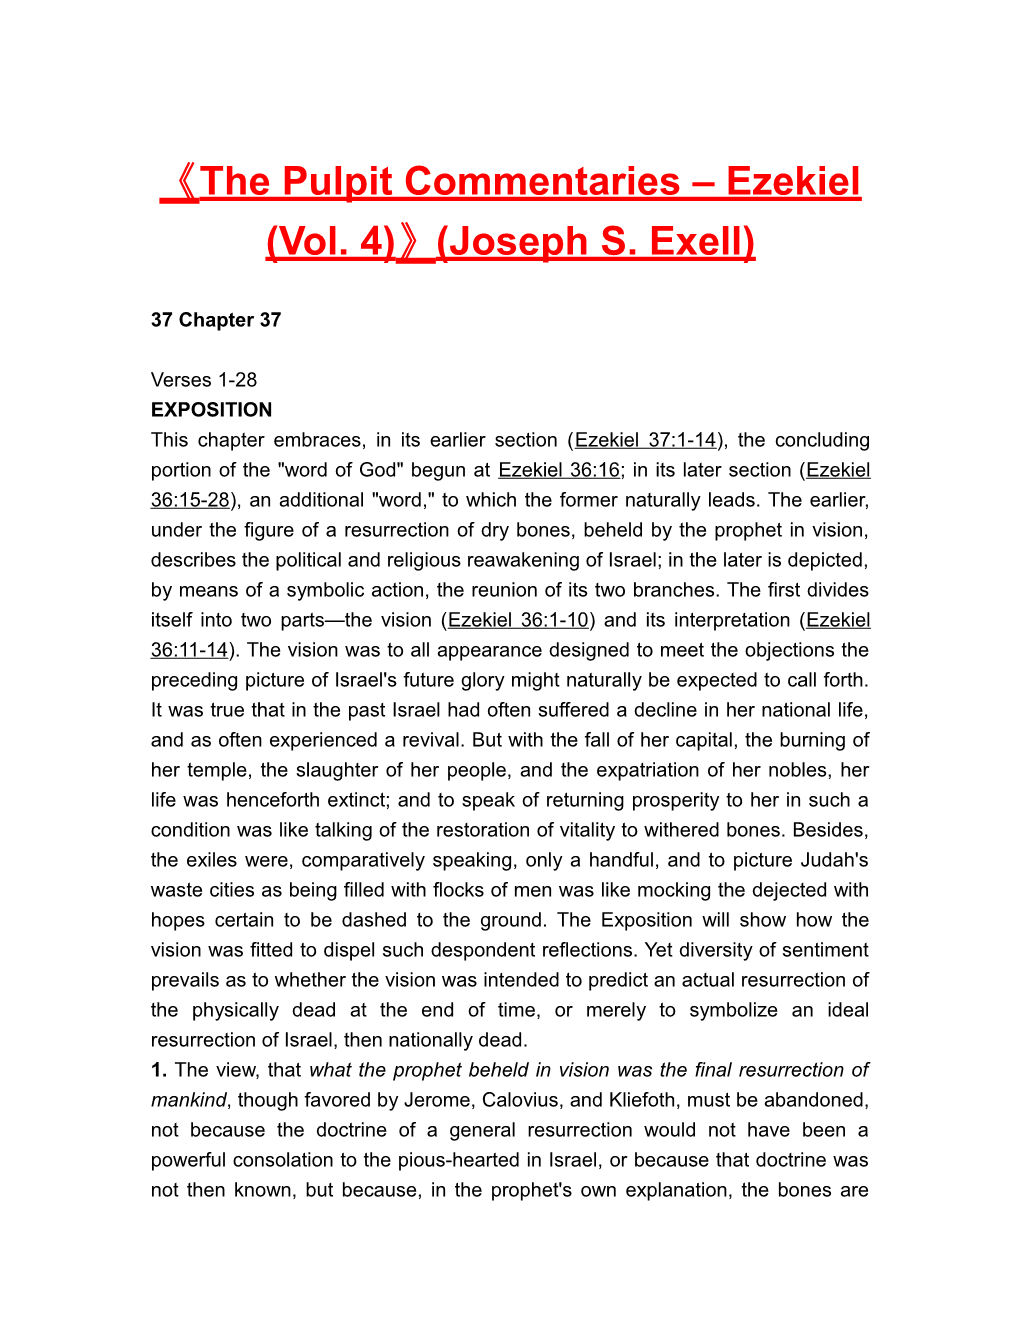 The Pulpit Commentaries Ezekiel (Vol. 4) (Joseph S. Exell)